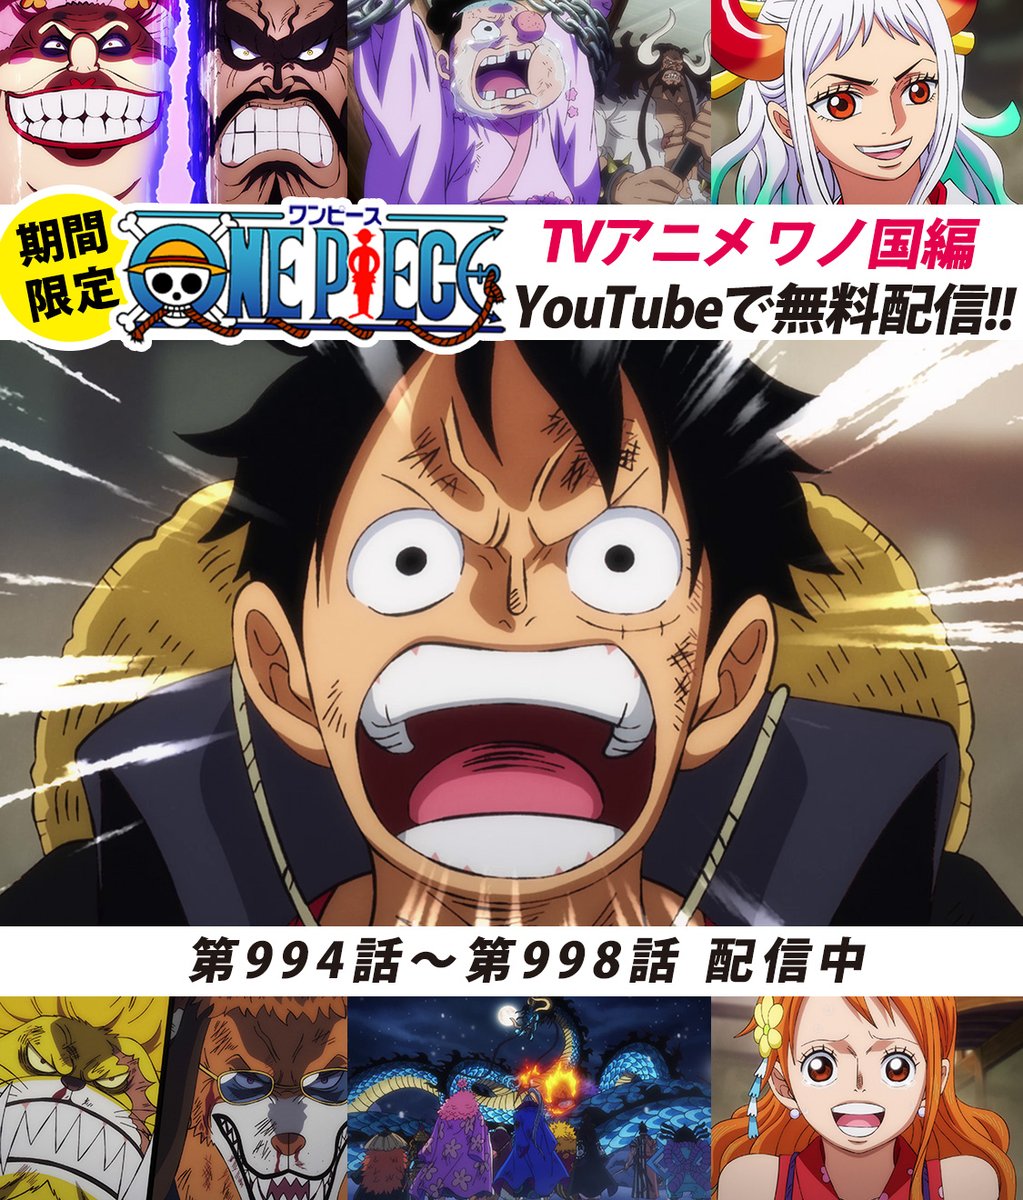 One Piece スタッフ 公式 Official Youtubeにてアニメ無料配信中 全面戦争 本格始動 994 998話を公開しました 来週21日 日 あさ9 30 いよいよ1000話が放送されます 超特報もあるので お楽しみに まずは994話をみる T Co